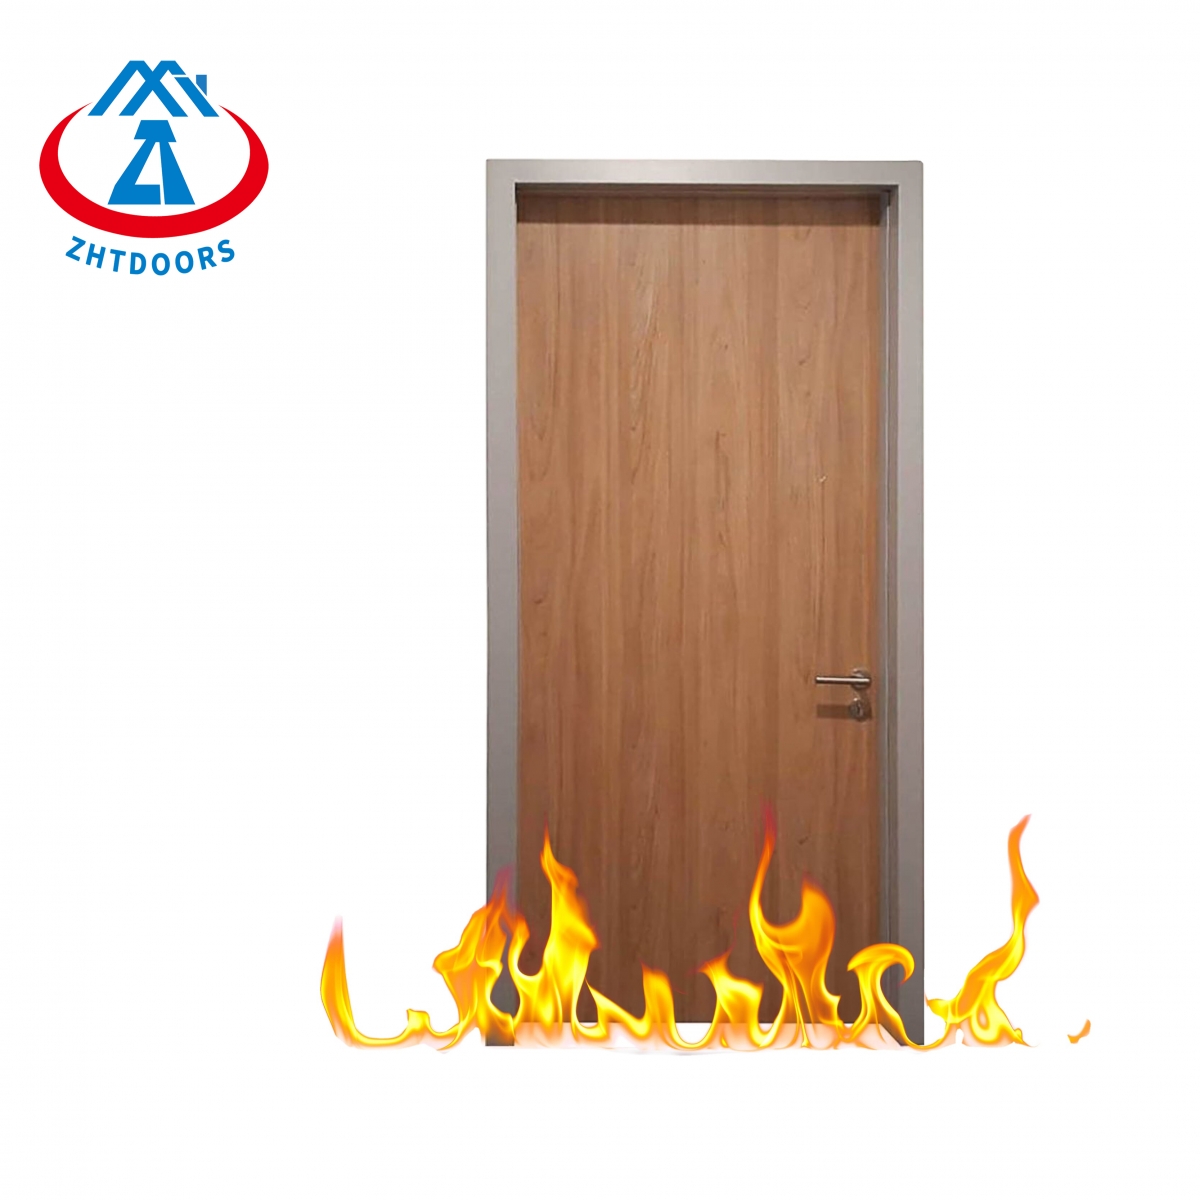 İç Kapılar Yangın Kapıları-ZTFIRE Kapı- Yangın Kapısı,Yangın Kapısı,Yangına Dayanıklı Kapı,Yangına Dayanıklı Kapı,Çelik Kapı,Metal Kapı,Çıkış Kapısı